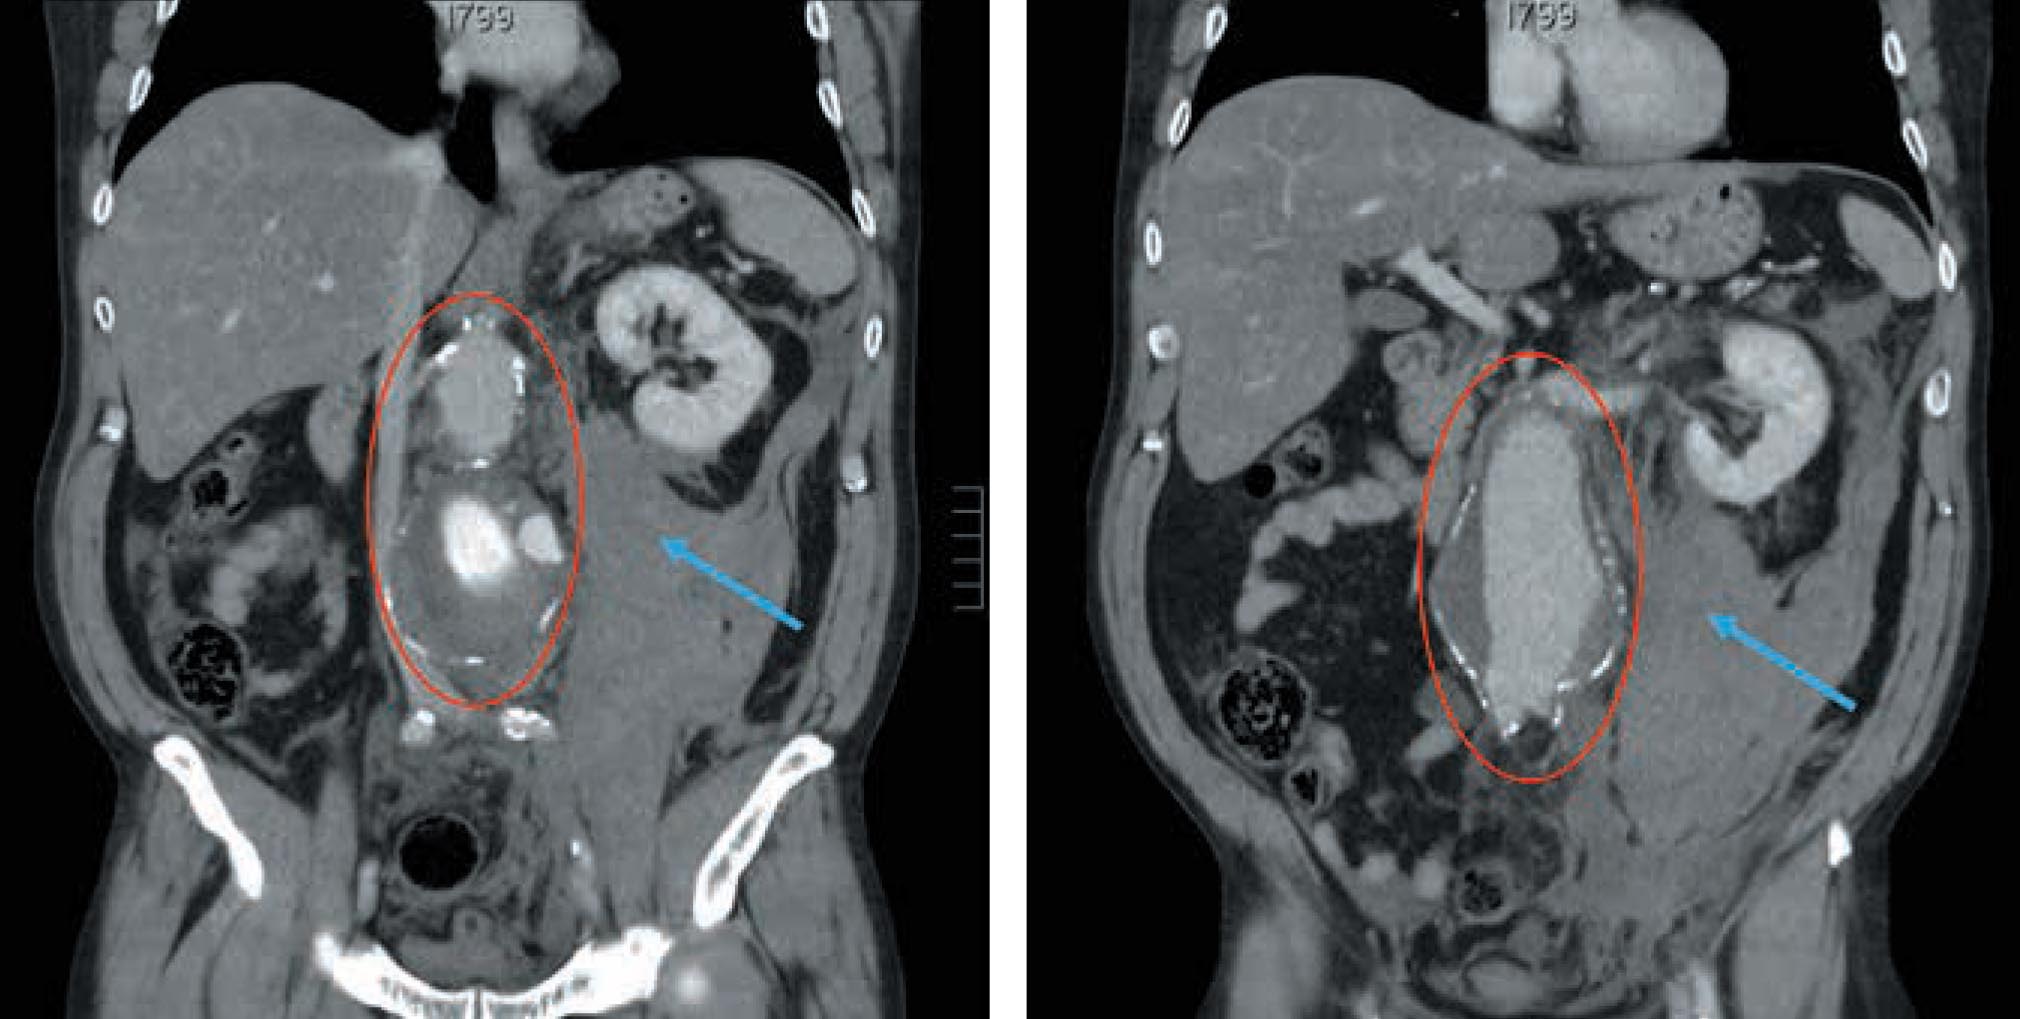 Figura 1 – Cortes frontales de TC de abdomen con contraste: se observa un aneurisma de aorta infrarrenal, parcialmente trombosado (circunferencia roja), así como un importante hematoma retroperitoneal (flecha azul). 